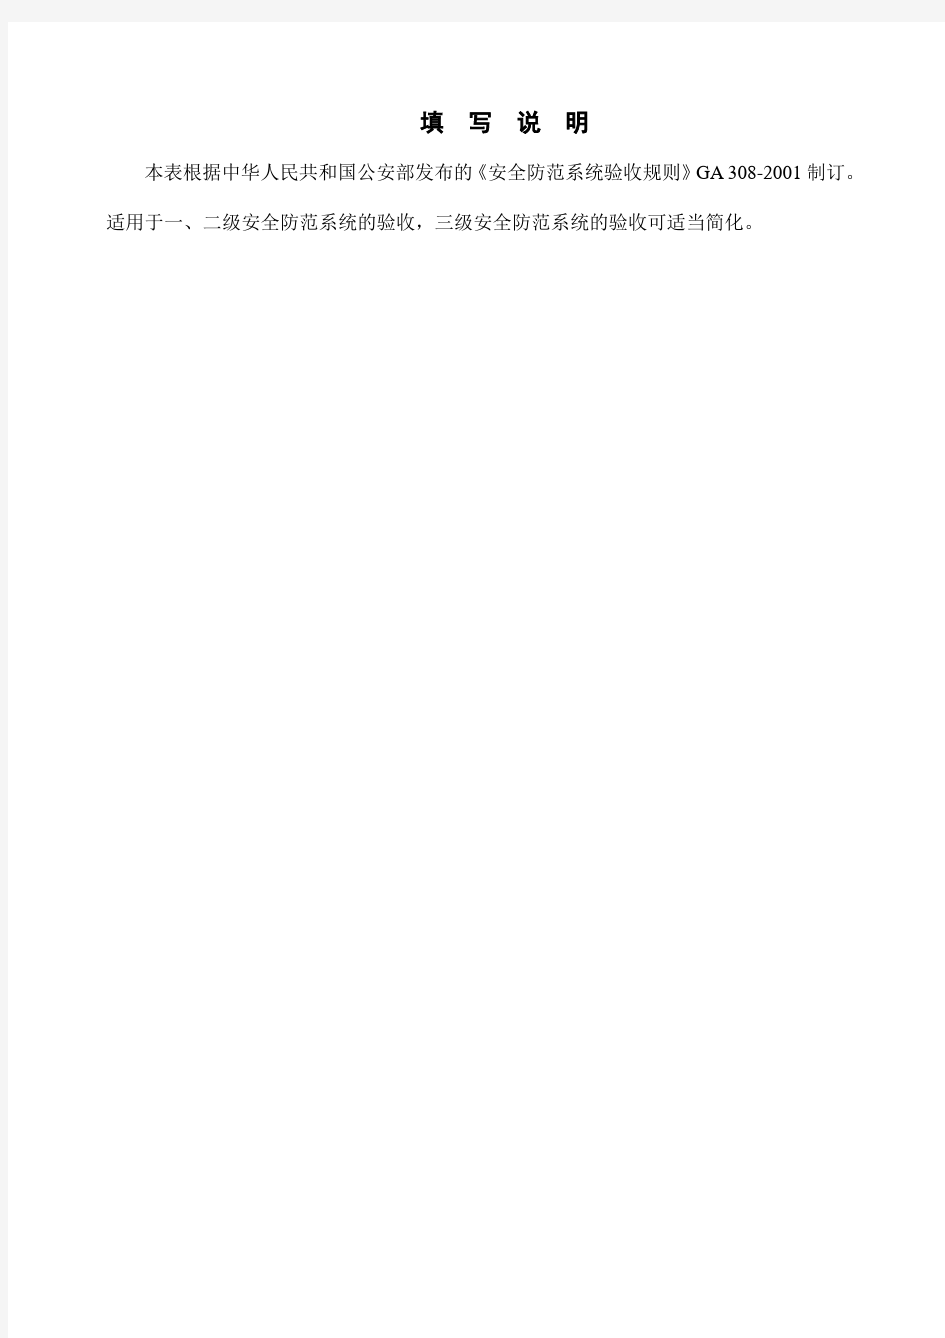 广东省安全技术防范系统验收表(完整版)